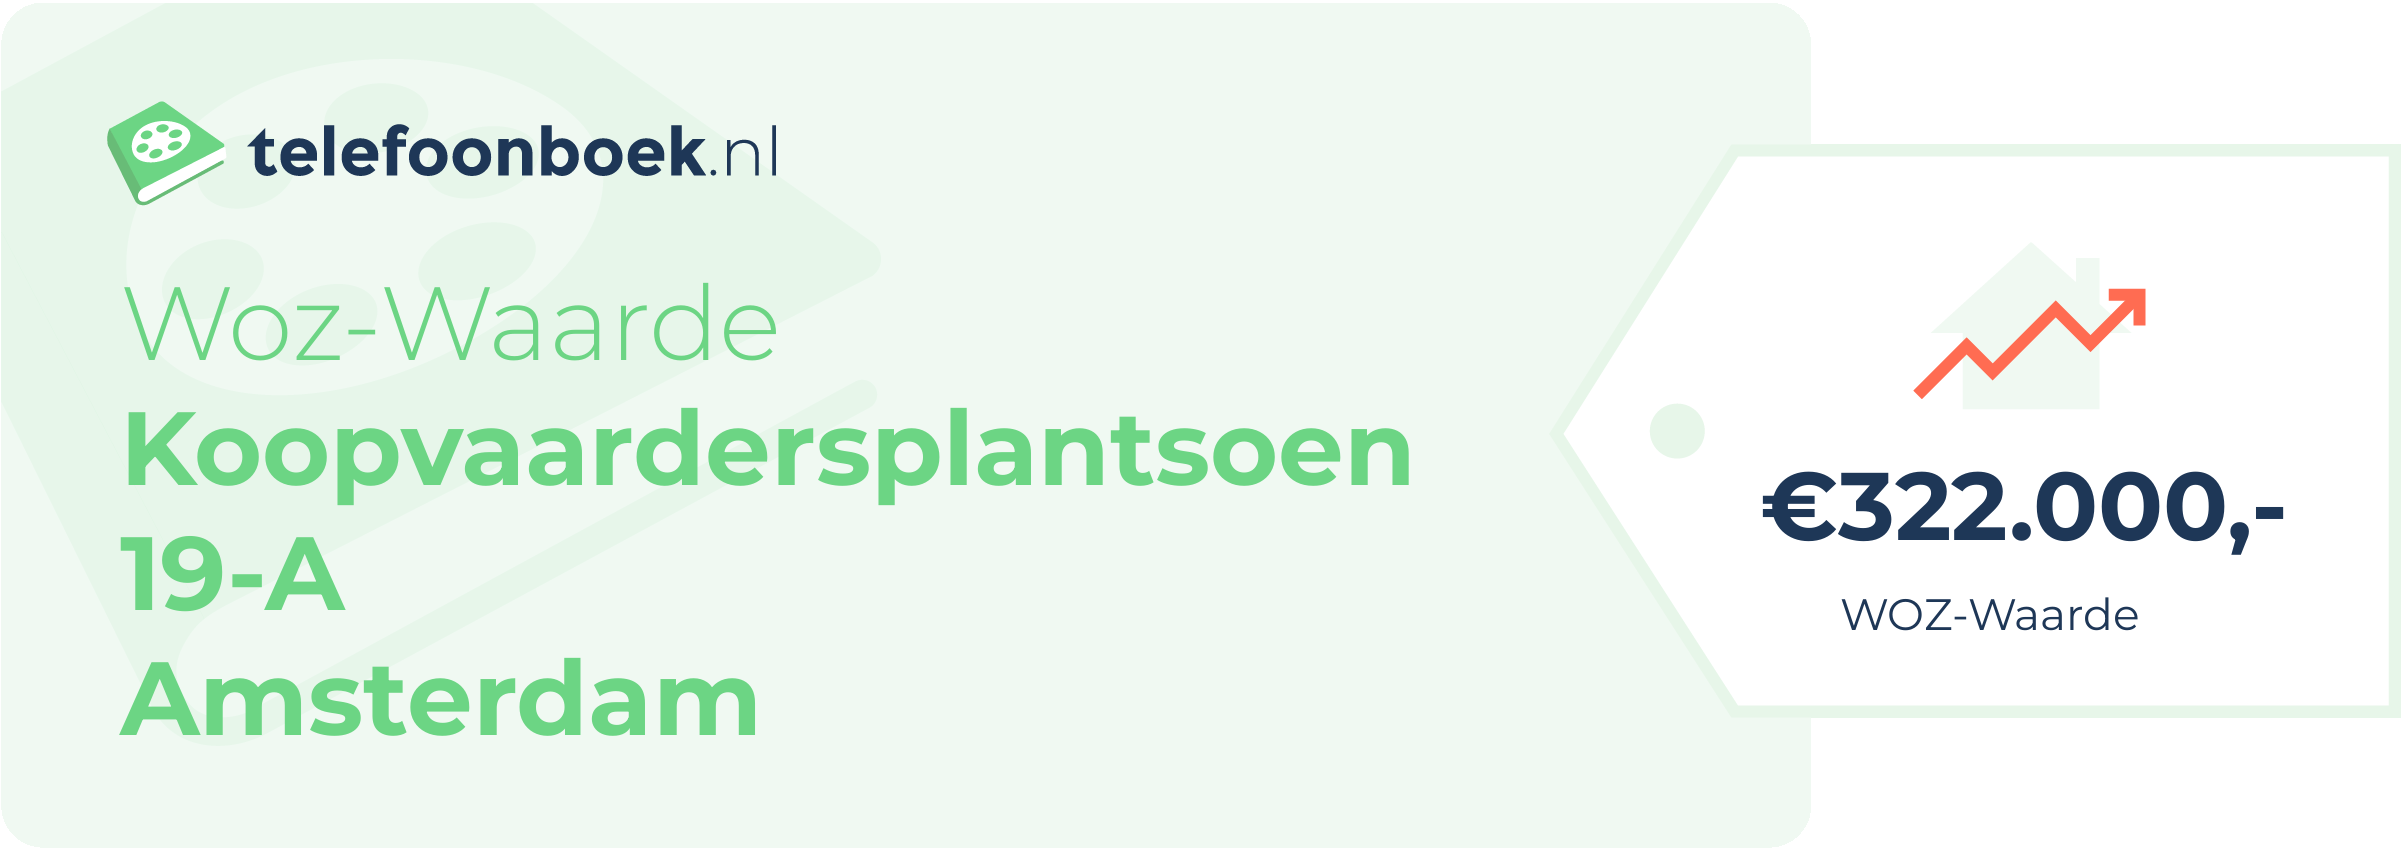 WOZ-waarde Koopvaardersplantsoen 19-A Amsterdam